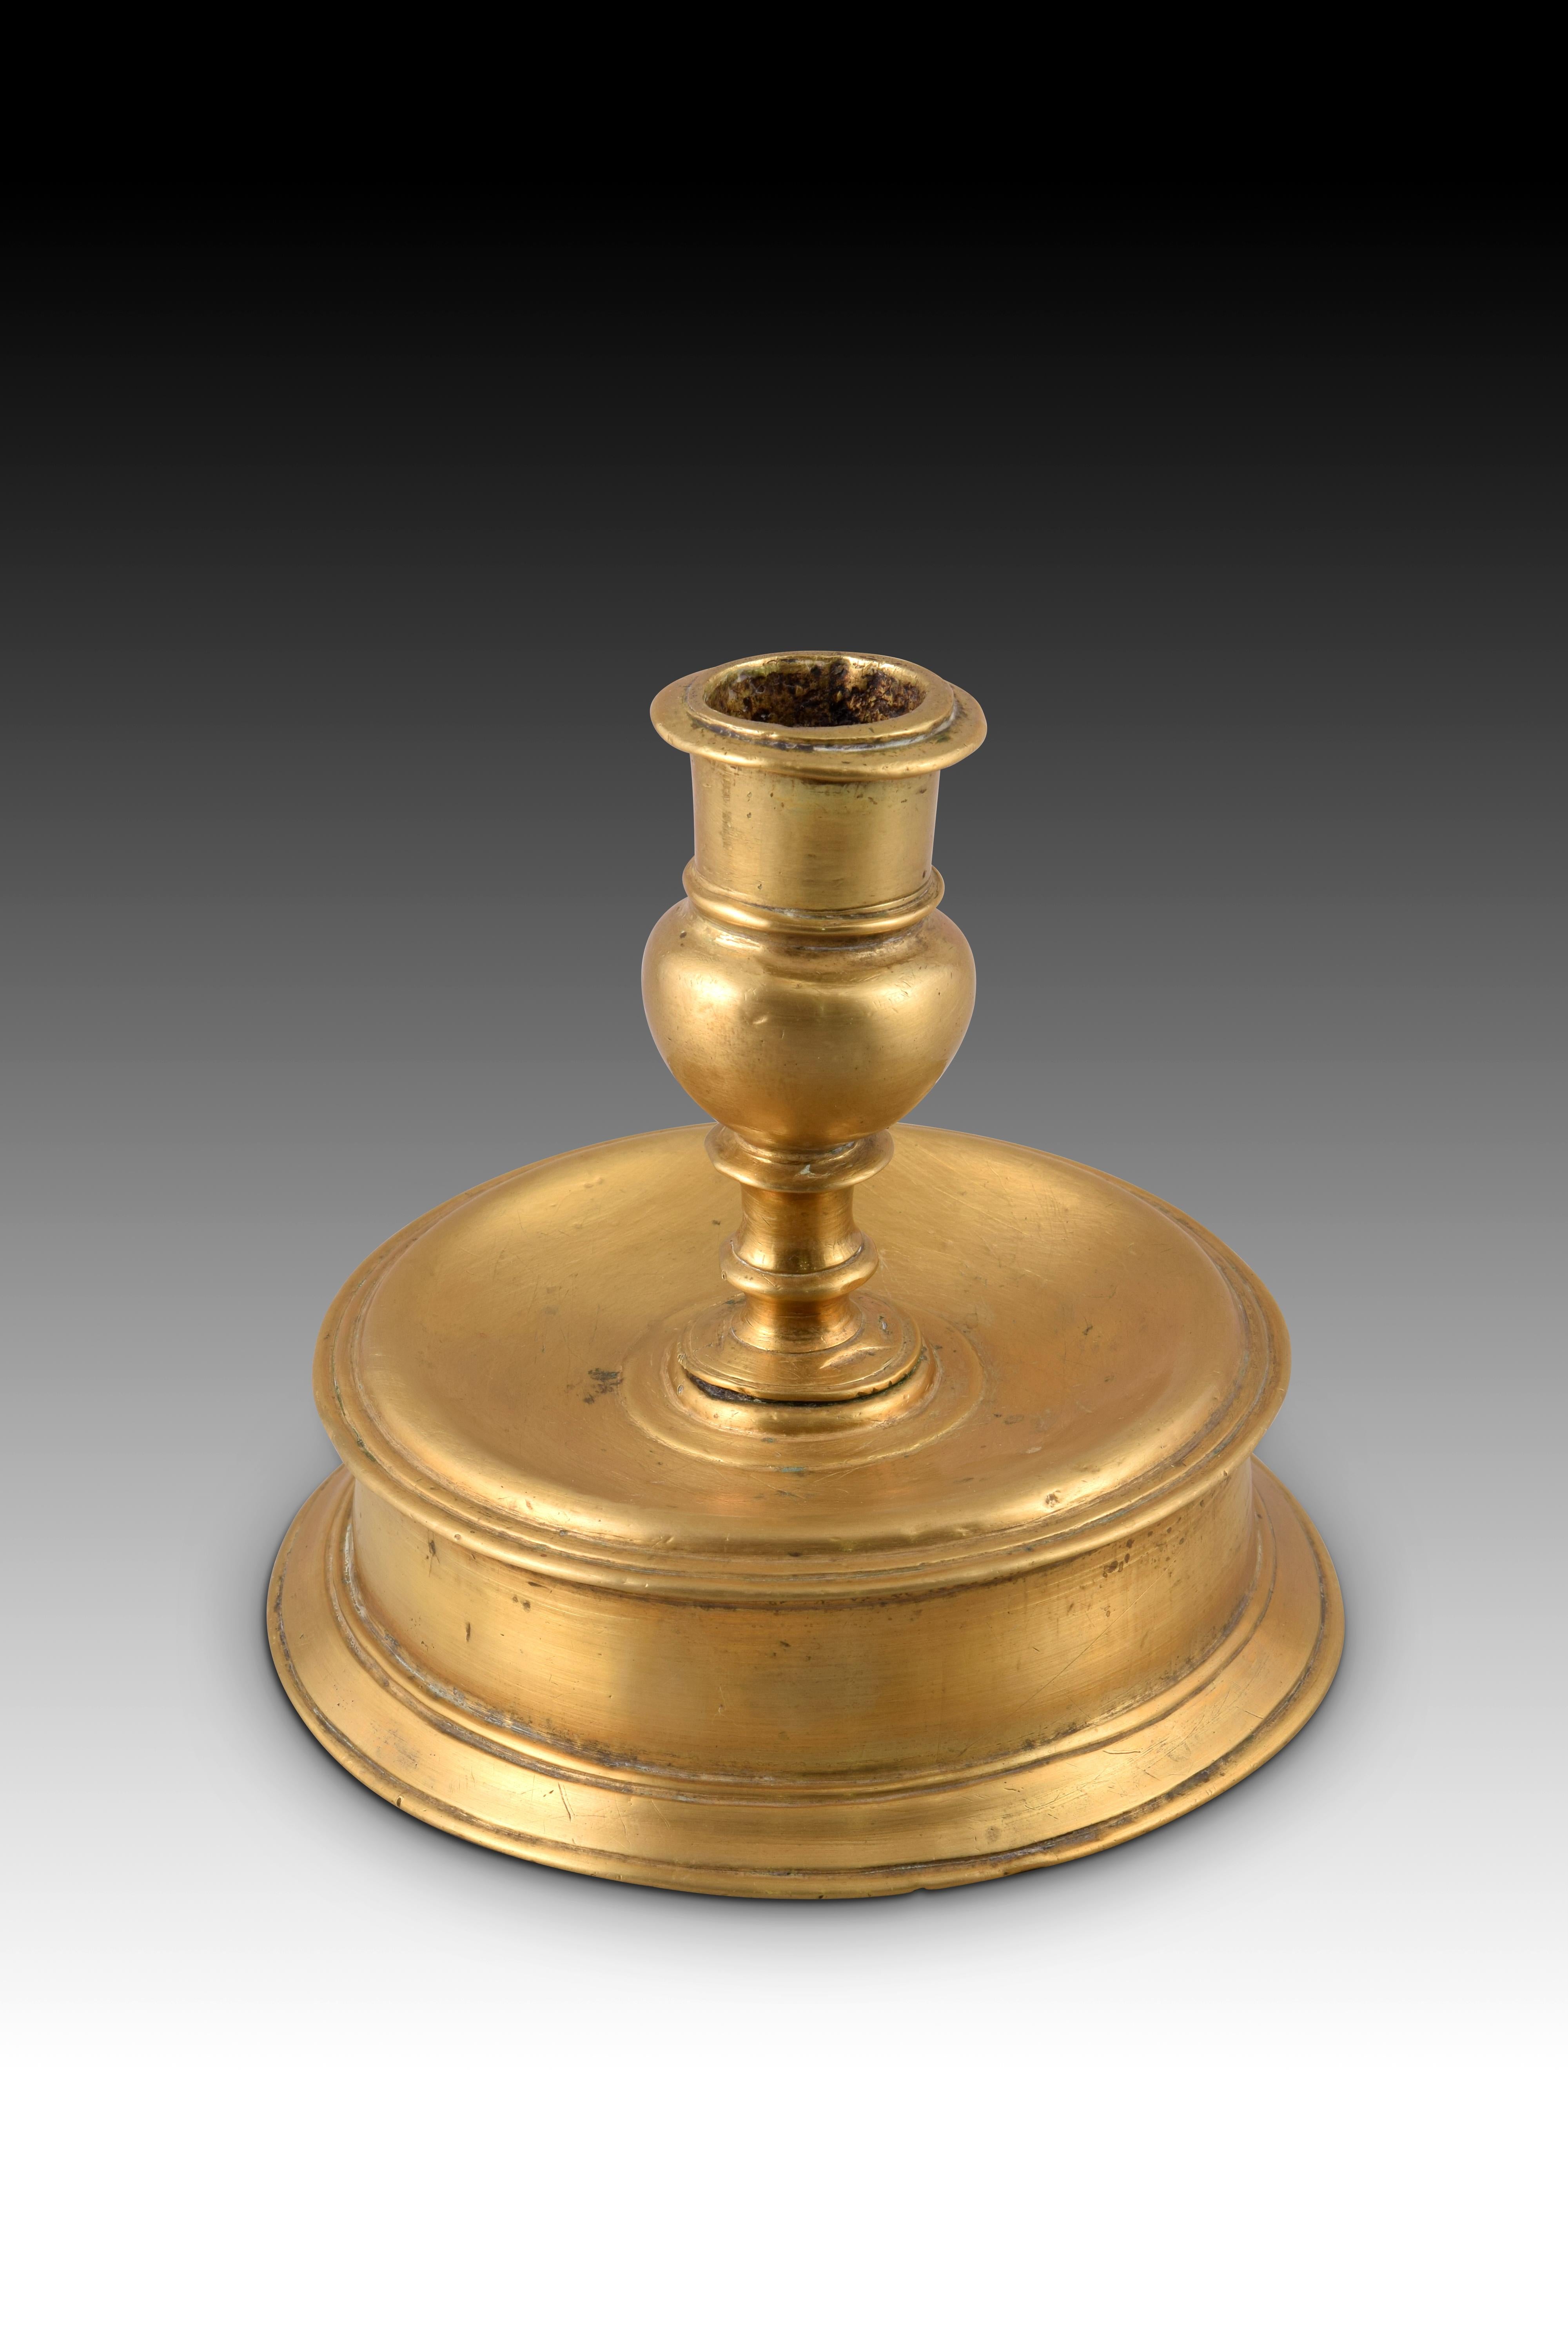 Chandelier à moulinets, bronze, siècle XVI. 
Chandelier du type dit 